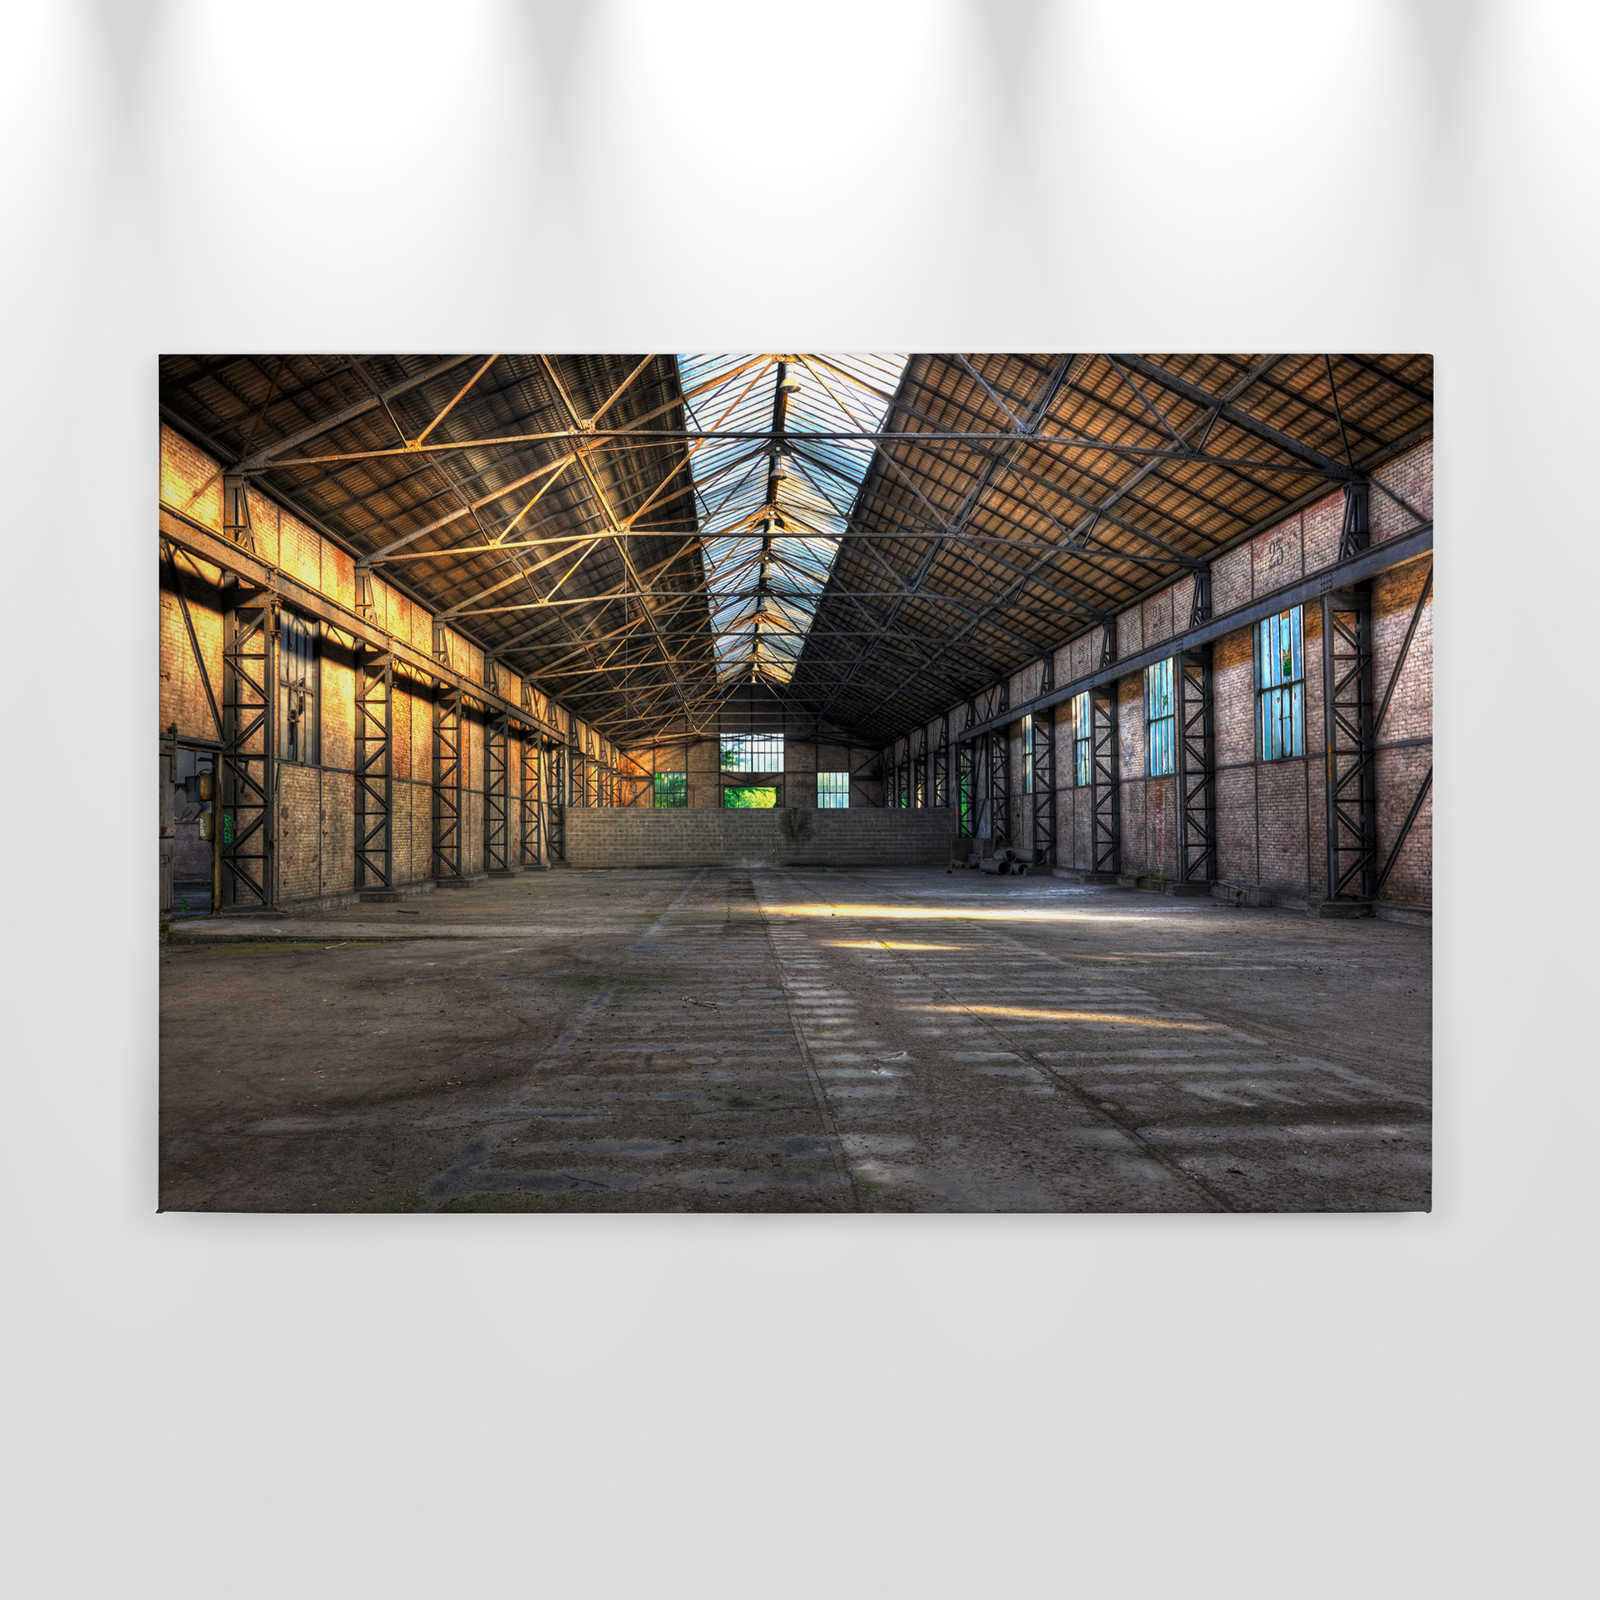             Canvas met verlaten industriële hal met 3D-effect - 0,90 m x 0,60 m
        